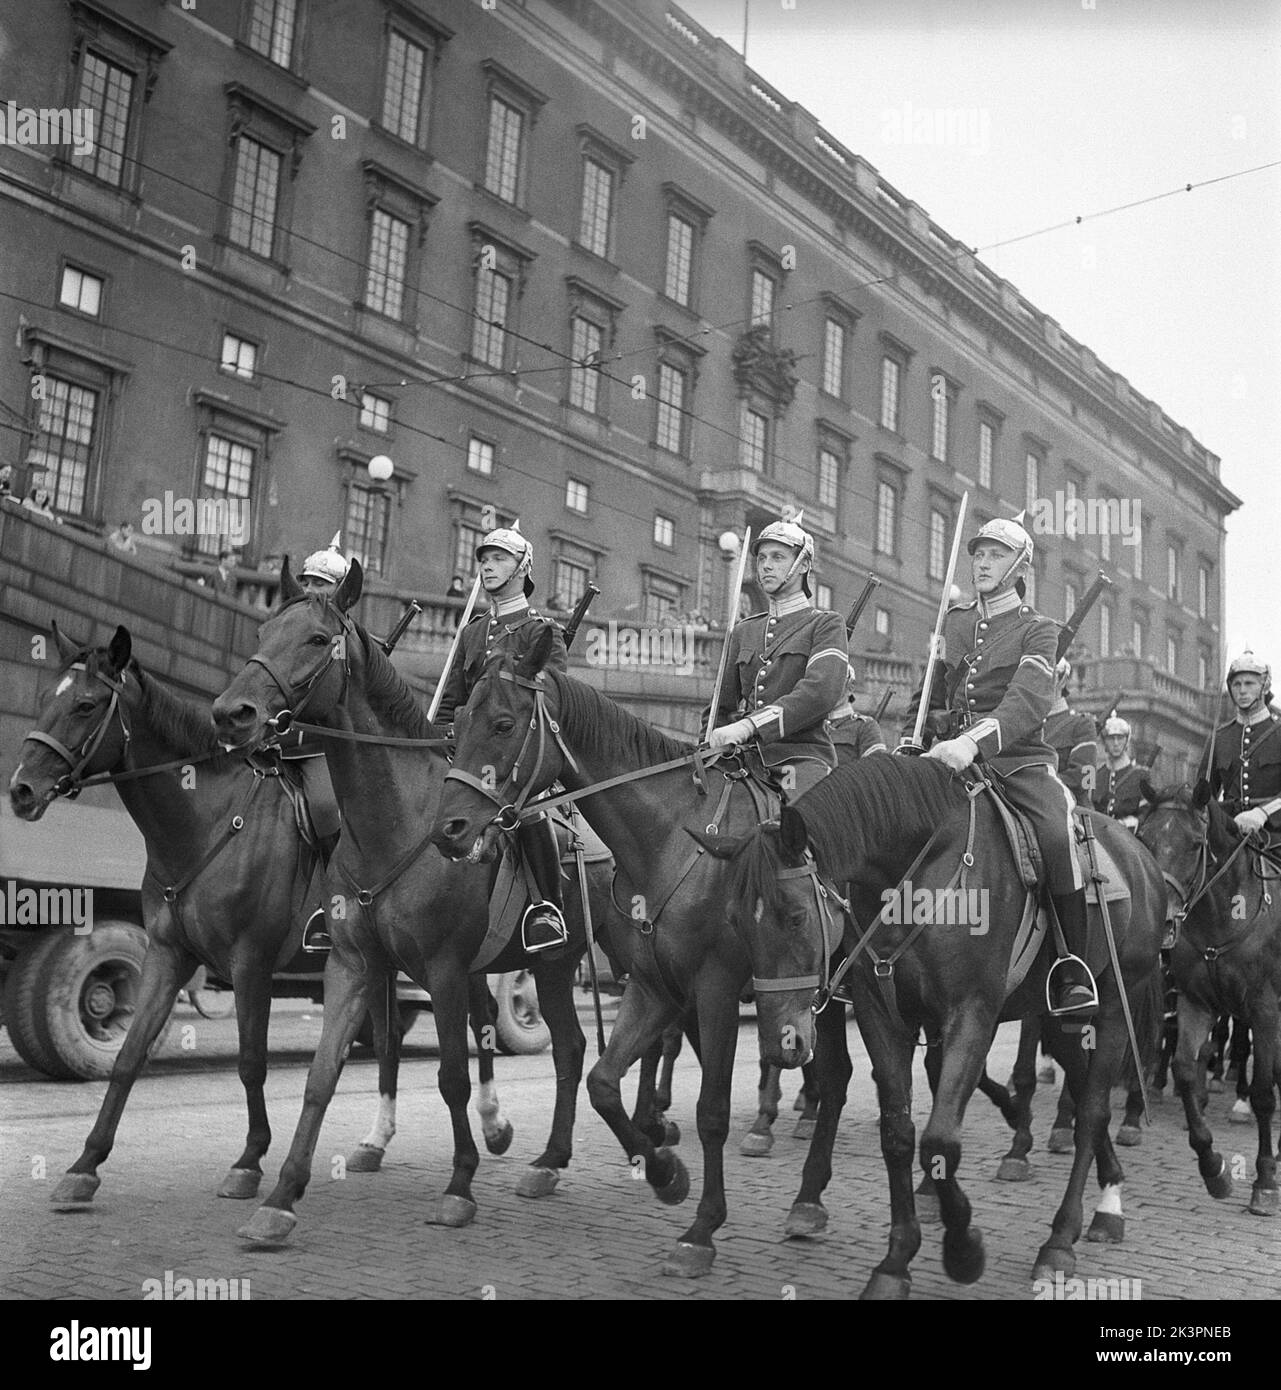 Remplacement des protections dans le 1940s. Les gardes à l'extérieur du château royal de Stockholm pour prendre leur tour pour surveiller le palais. Suède 1947 Kristoffersson réf. AD32-8 Banque D'Images